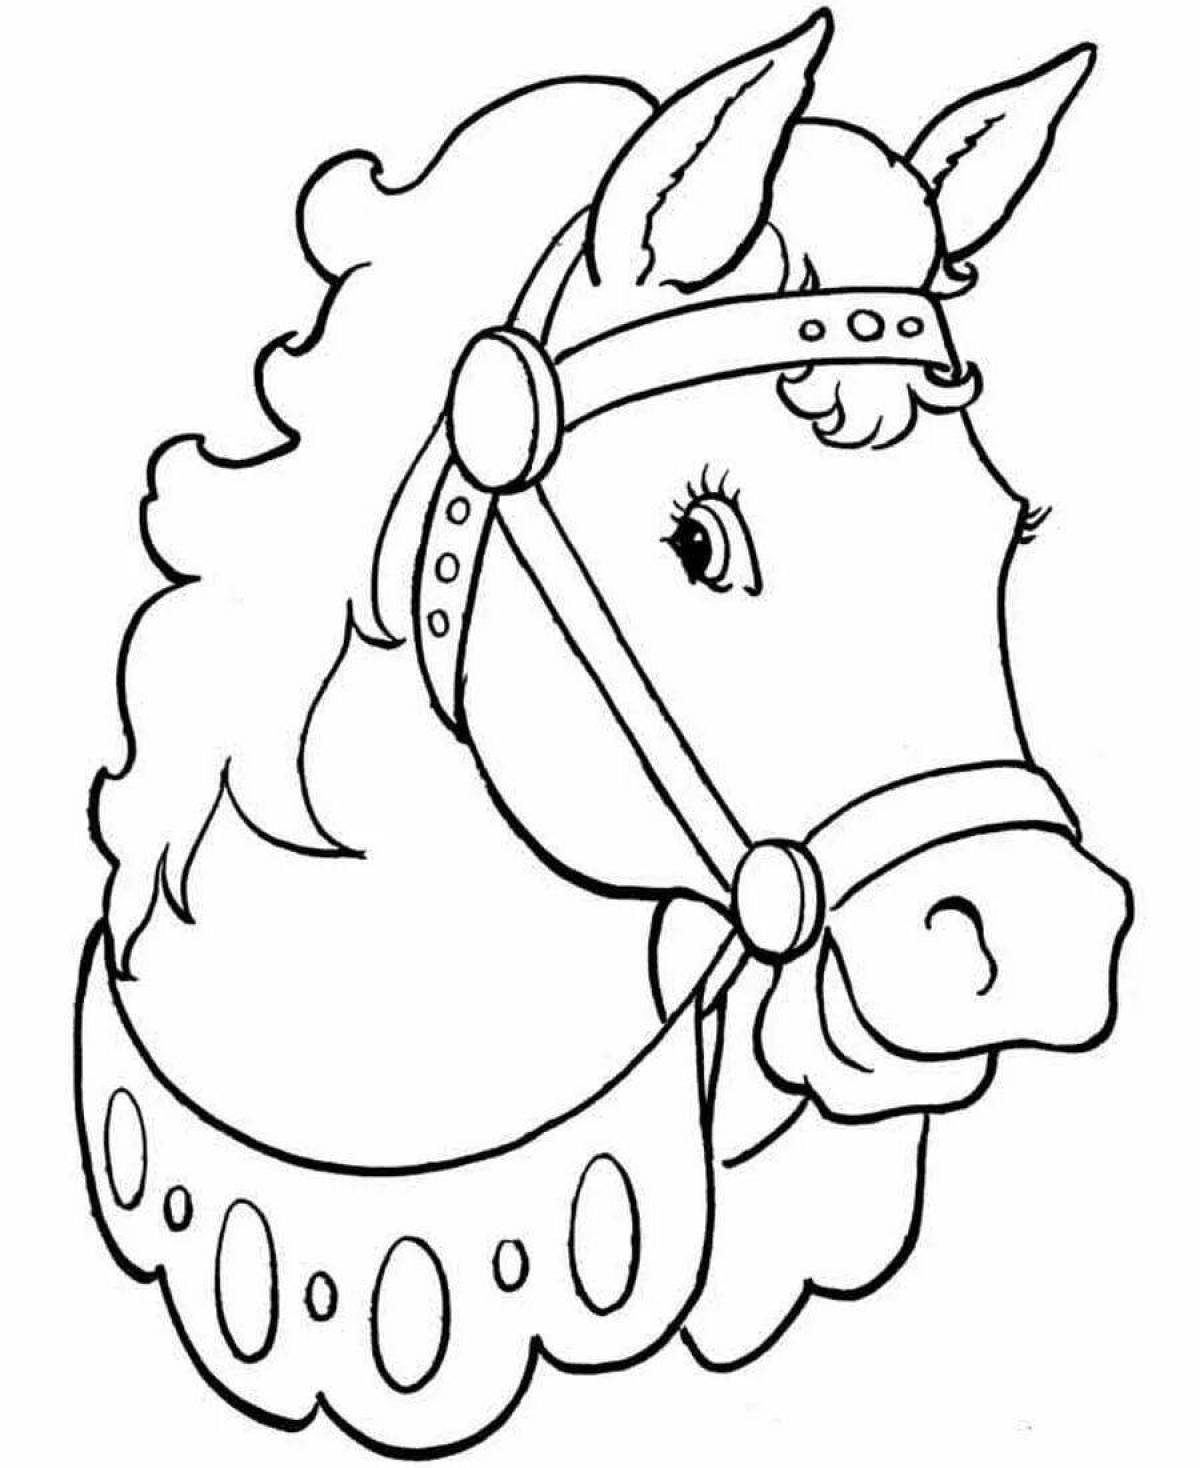 Раскрасить лошадку. Рисунки для раскраски. Раскраска. Лошади. Лошадка раскраска для детей. Рисунок лошади для раскрашивания.